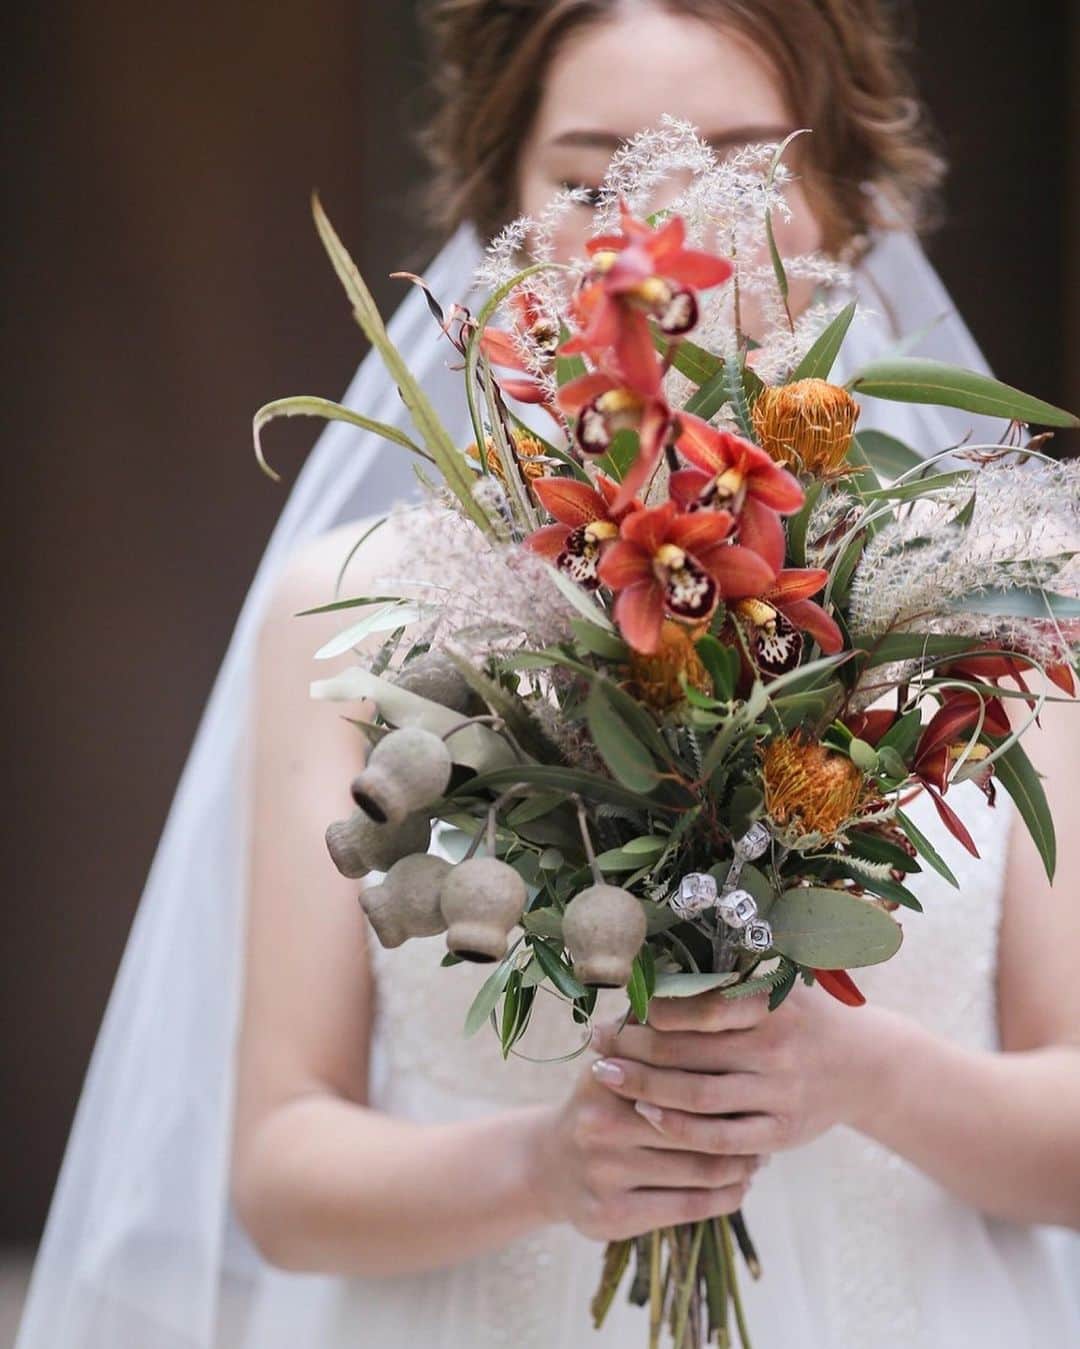 ARCH DAYS Weddingsさんのインスタグラム写真 - (ARCH DAYS WeddingsInstagram)「▼▽LOVE IS A BATTLEFIELD▼▽﻿ ザ・ガーデンオリエンタル大阪で行われたオータムウェディング。ボルドーやバーガンディ・ブラウンなど褐色系のお花を使って季節感を演出。ブーケの赤いシンビジウムが上手なアクセントに。﻿ ﻿ Bride : @wd2018ym﻿ Planner : 加藤 由佳里 ( @tgoo_wedding )﻿ Photo by : HAYATO ( @laviefactory )﻿ ﻿ ▽ARCH DAYSトップページはこちらから☑﻿﻿﻿﻿﻿﻿﻿﻿﻿﻿﻿﻿﻿﻿﻿﻿﻿﻿﻿﻿﻿﻿﻿﻿﻿﻿﻿ @archdays_weddings﻿﻿﻿﻿﻿﻿﻿﻿﻿﻿﻿﻿﻿﻿﻿﻿﻿﻿﻿﻿﻿﻿﻿﻿﻿﻿﻿﻿ プロフィールのリンクから👰🏻﻿﻿﻿﻿﻿﻿﻿﻿﻿﻿﻿﻿﻿﻿﻿﻿﻿﻿﻿﻿﻿﻿﻿﻿﻿﻿﻿﻿ ﻿﻿﻿﻿﻿﻿﻿﻿﻿﻿﻿﻿﻿﻿﻿﻿﻿﻿ ﻿﻿﻿﻿﻿﻿﻿﻿﻿﻿﻿ ﻿﻿﻿﻿﻿﻿﻿﻿#archdays花嫁 をつけて投稿して頂いた方にサイト掲載のお声がけをさせて頂く場合があります🕊🌿﻿﻿﻿﻿﻿﻿﻿﻿﻿﻿﻿﻿﻿﻿﻿﻿﻿﻿﻿﻿﻿﻿﻿﻿﻿﻿﻿﻿ ﻿﻿﻿﻿﻿﻿﻿﻿﻿﻿﻿﻿﻿﻿﻿﻿﻿﻿﻿﻿﻿﻿﻿﻿﻿﻿﻿﻿ ﻿————————-//-﻿﻿﻿﻿﻿﻿﻿﻿﻿﻿﻿﻿﻿﻿﻿﻿﻿﻿﻿﻿﻿﻿﻿﻿﻿﻿﻿﻿﻿ いつもARCH DAYSをご覧いただきありがとうございます！﻿﻿﻿﻿﻿﻿﻿﻿﻿﻿﻿﻿﻿﻿﻿﻿﻿﻿﻿﻿﻿﻿﻿﻿﻿﻿﻿﻿﻿ ﻿﻿﻿﻿﻿﻿﻿﻿﻿﻿﻿﻿﻿﻿﻿﻿﻿﻿﻿﻿﻿﻿﻿﻿﻿﻿﻿﻿﻿ この度は、皆様に素敵な記事をさらに多くお届けできるよう、ライターさんを募集することになりました。﻿﻿﻿﻿﻿﻿﻿﻿﻿﻿﻿﻿﻿﻿﻿﻿﻿﻿﻿﻿﻿﻿﻿﻿﻿﻿﻿﻿﻿ 結婚式に関わる素敵なオリジナル記事を描いてくださるライター様は奮ってご応募くださいませ☺﻿﻿﻿﻿﻿﻿﻿﻿﻿﻿﻿﻿﻿﻿﻿﻿﻿﻿﻿﻿﻿﻿﻿﻿﻿﻿﻿﻿﻿ ﻿﻿﻿﻿﻿﻿﻿﻿﻿﻿﻿﻿﻿﻿﻿﻿﻿﻿﻿﻿﻿﻿﻿﻿﻿﻿﻿﻿﻿ *************﻿﻿﻿﻿﻿﻿﻿﻿﻿﻿﻿﻿﻿﻿﻿﻿﻿﻿﻿﻿﻿﻿﻿﻿﻿﻿﻿﻿﻿ ◆応募の仕方﻿﻿﻿﻿﻿﻿﻿﻿﻿﻿﻿﻿﻿﻿﻿﻿﻿﻿﻿﻿﻿﻿﻿﻿﻿﻿﻿﻿﻿ ARCH DAYS公式サイトのライター募集のリンクバナー、もしくは最下部のWEDDING ライター募集という項目をクリックしていただき、応募フォームに必要事項を入れ完了してください﻿﻿﻿﻿﻿﻿﻿﻿﻿﻿﻿﻿﻿﻿﻿﻿﻿﻿﻿﻿﻿﻿﻿﻿﻿﻿﻿﻿﻿ *************﻿﻿﻿﻿﻿﻿﻿﻿﻿﻿﻿﻿﻿﻿﻿﻿﻿﻿﻿﻿﻿﻿﻿﻿﻿﻿﻿﻿﻿ ﻿﻿﻿﻿﻿﻿﻿﻿﻿﻿﻿﻿﻿﻿﻿﻿﻿﻿﻿﻿﻿﻿﻿﻿﻿﻿﻿﻿﻿ 私たちと一緒にARCH DAYSの素敵な世界観を作っていきませんか？﻿﻿﻿﻿﻿﻿﻿﻿﻿﻿﻿﻿﻿﻿﻿﻿﻿﻿﻿﻿﻿﻿﻿﻿﻿﻿﻿﻿﻿ たくさんのご応募お待ちしております♡﻿﻿﻿﻿﻿﻿﻿﻿﻿﻿﻿﻿﻿﻿﻿﻿﻿﻿﻿﻿﻿﻿﻿﻿﻿﻿﻿﻿﻿ ﻿﻿﻿﻿﻿﻿﻿﻿﻿﻿﻿﻿﻿﻿﻿﻿﻿﻿﻿﻿﻿﻿﻿﻿﻿﻿﻿﻿﻿ ARCH DAYS編集部 ﻿﻿﻿﻿﻿﻿﻿﻿﻿﻿﻿﻿﻿﻿﻿﻿﻿﻿﻿﻿﻿﻿﻿﻿﻿﻿﻿﻿﻿ ————————-//-﻿﻿﻿﻿﻿﻿﻿﻿﻿﻿﻿﻿﻿﻿﻿﻿﻿﻿﻿﻿﻿﻿﻿﻿﻿﻿﻿﻿﻿ ﻿﻿﻿﻿﻿﻿﻿﻿﻿﻿﻿﻿﻿﻿﻿﻿﻿﻿﻿﻿﻿﻿﻿﻿﻿﻿﻿﻿ ﻿﻿﻿﻿﻿﻿﻿﻿﻿﻿﻿﻿﻿﻿﻿﻿﻿﻿﻿﻿﻿﻿﻿﻿﻿﻿﻿ ▽バースデー・ベビーシャワーなどの情報を見るなら💁🎉﻿﻿﻿﻿﻿﻿﻿﻿﻿﻿﻿﻿﻿﻿﻿﻿﻿﻿﻿﻿﻿﻿﻿﻿﻿﻿﻿﻿ @archdays﻿﻿﻿﻿﻿﻿﻿﻿﻿﻿﻿﻿﻿﻿﻿﻿﻿﻿﻿﻿﻿﻿﻿﻿﻿﻿﻿﻿ ﻿﻿﻿﻿﻿﻿﻿﻿﻿﻿﻿﻿﻿﻿﻿﻿﻿﻿ ----------------------﻿﻿﻿﻿﻿﻿﻿﻿﻿﻿﻿﻿﻿﻿﻿﻿﻿﻿﻿﻿﻿﻿﻿﻿﻿﻿﻿﻿﻿﻿﻿﻿﻿﻿﻿﻿﻿﻿﻿ #archdays #wedding #bridal #tgoo #tgoowedding #tgoo花嫁 #tgoo卒花 #tgooプレ花嫁 #tgoo花嫁組 #tgoo花嫁会 #ウェディングブーケ #ウェルカムボード #ウェディングケーキ #関西花嫁 #関西花嫁会 #関西花嫁組 #関西花嫁さんと繋がりたい #大阪花嫁 #大阪花嫁会 #大阪花嫁準備  #結婚式 #ウェディング #プレ花嫁 #卒花嫁 #卒花 #2019春婚 #2019夏婚 #2019秋婚 #2019冬婚﻿﻿﻿﻿﻿﻿﻿ ----------------------﻿﻿﻿﻿﻿﻿﻿﻿﻿﻿﻿﻿﻿﻿﻿﻿﻿﻿﻿﻿﻿﻿﻿﻿﻿﻿﻿﻿﻿﻿﻿﻿﻿﻿﻿﻿﻿﻿﻿ https://archdays.com/album/2019/04/10/42933﻿ ----------------------﻿﻿﻿﻿﻿﻿﻿﻿﻿﻿﻿﻿﻿﻿﻿﻿﻿﻿﻿﻿﻿﻿﻿﻿﻿﻿﻿﻿﻿﻿﻿﻿﻿﻿﻿﻿」4月17日 20時34分 - archdays_weddings